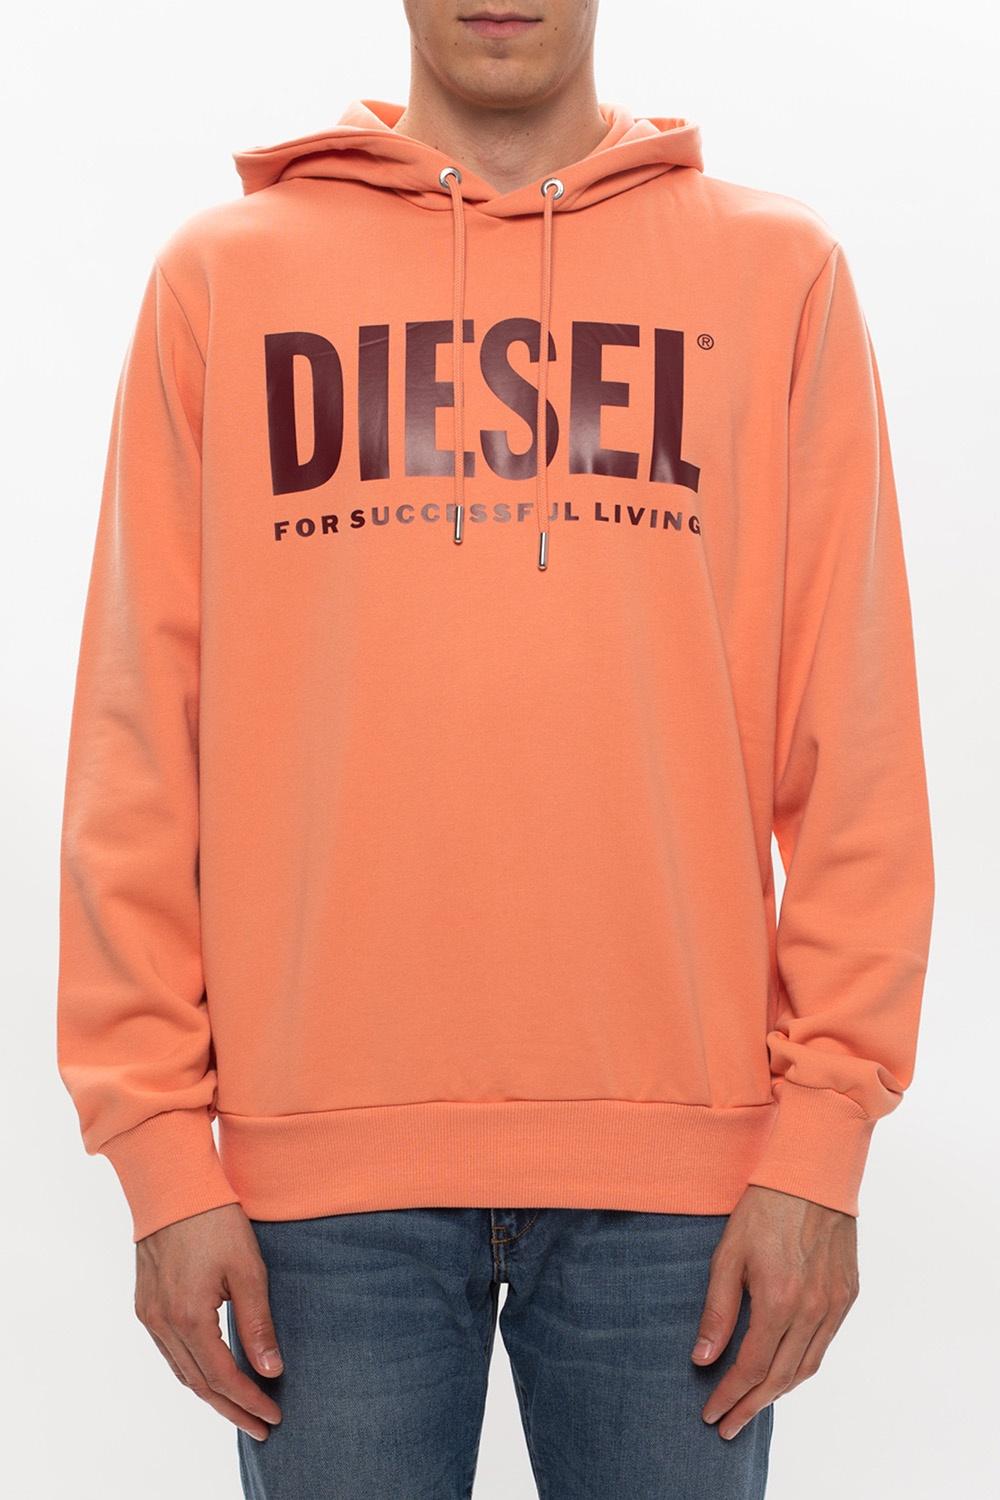 DIESEL Cotton Sweatshirt With Logo Orange for Men - Lyst